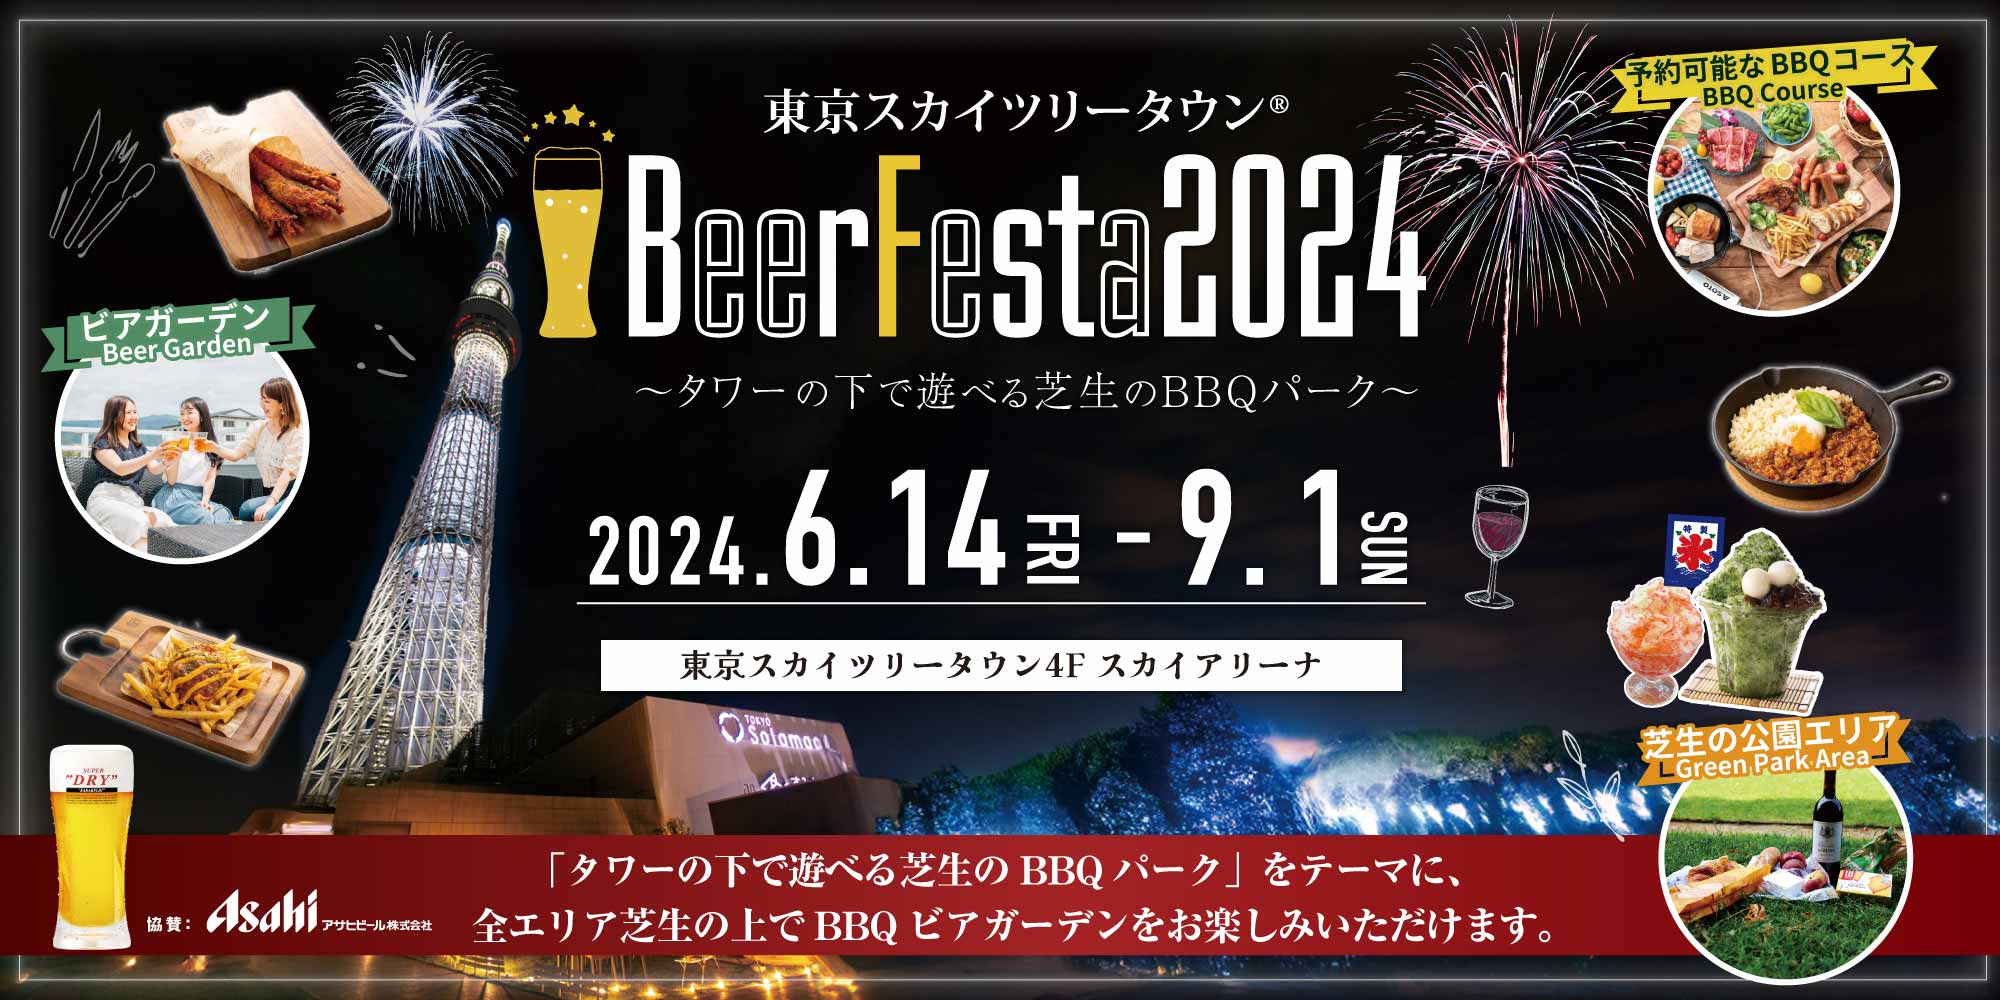 BeerFesta2024 2024.6.14(FRI)-9.1(SUN) 「タワーの下で遊べる芝生のBBQパーク」をテーマに、全エリア芝生の上でBBQビアガーデンをお楽しみいただけます。